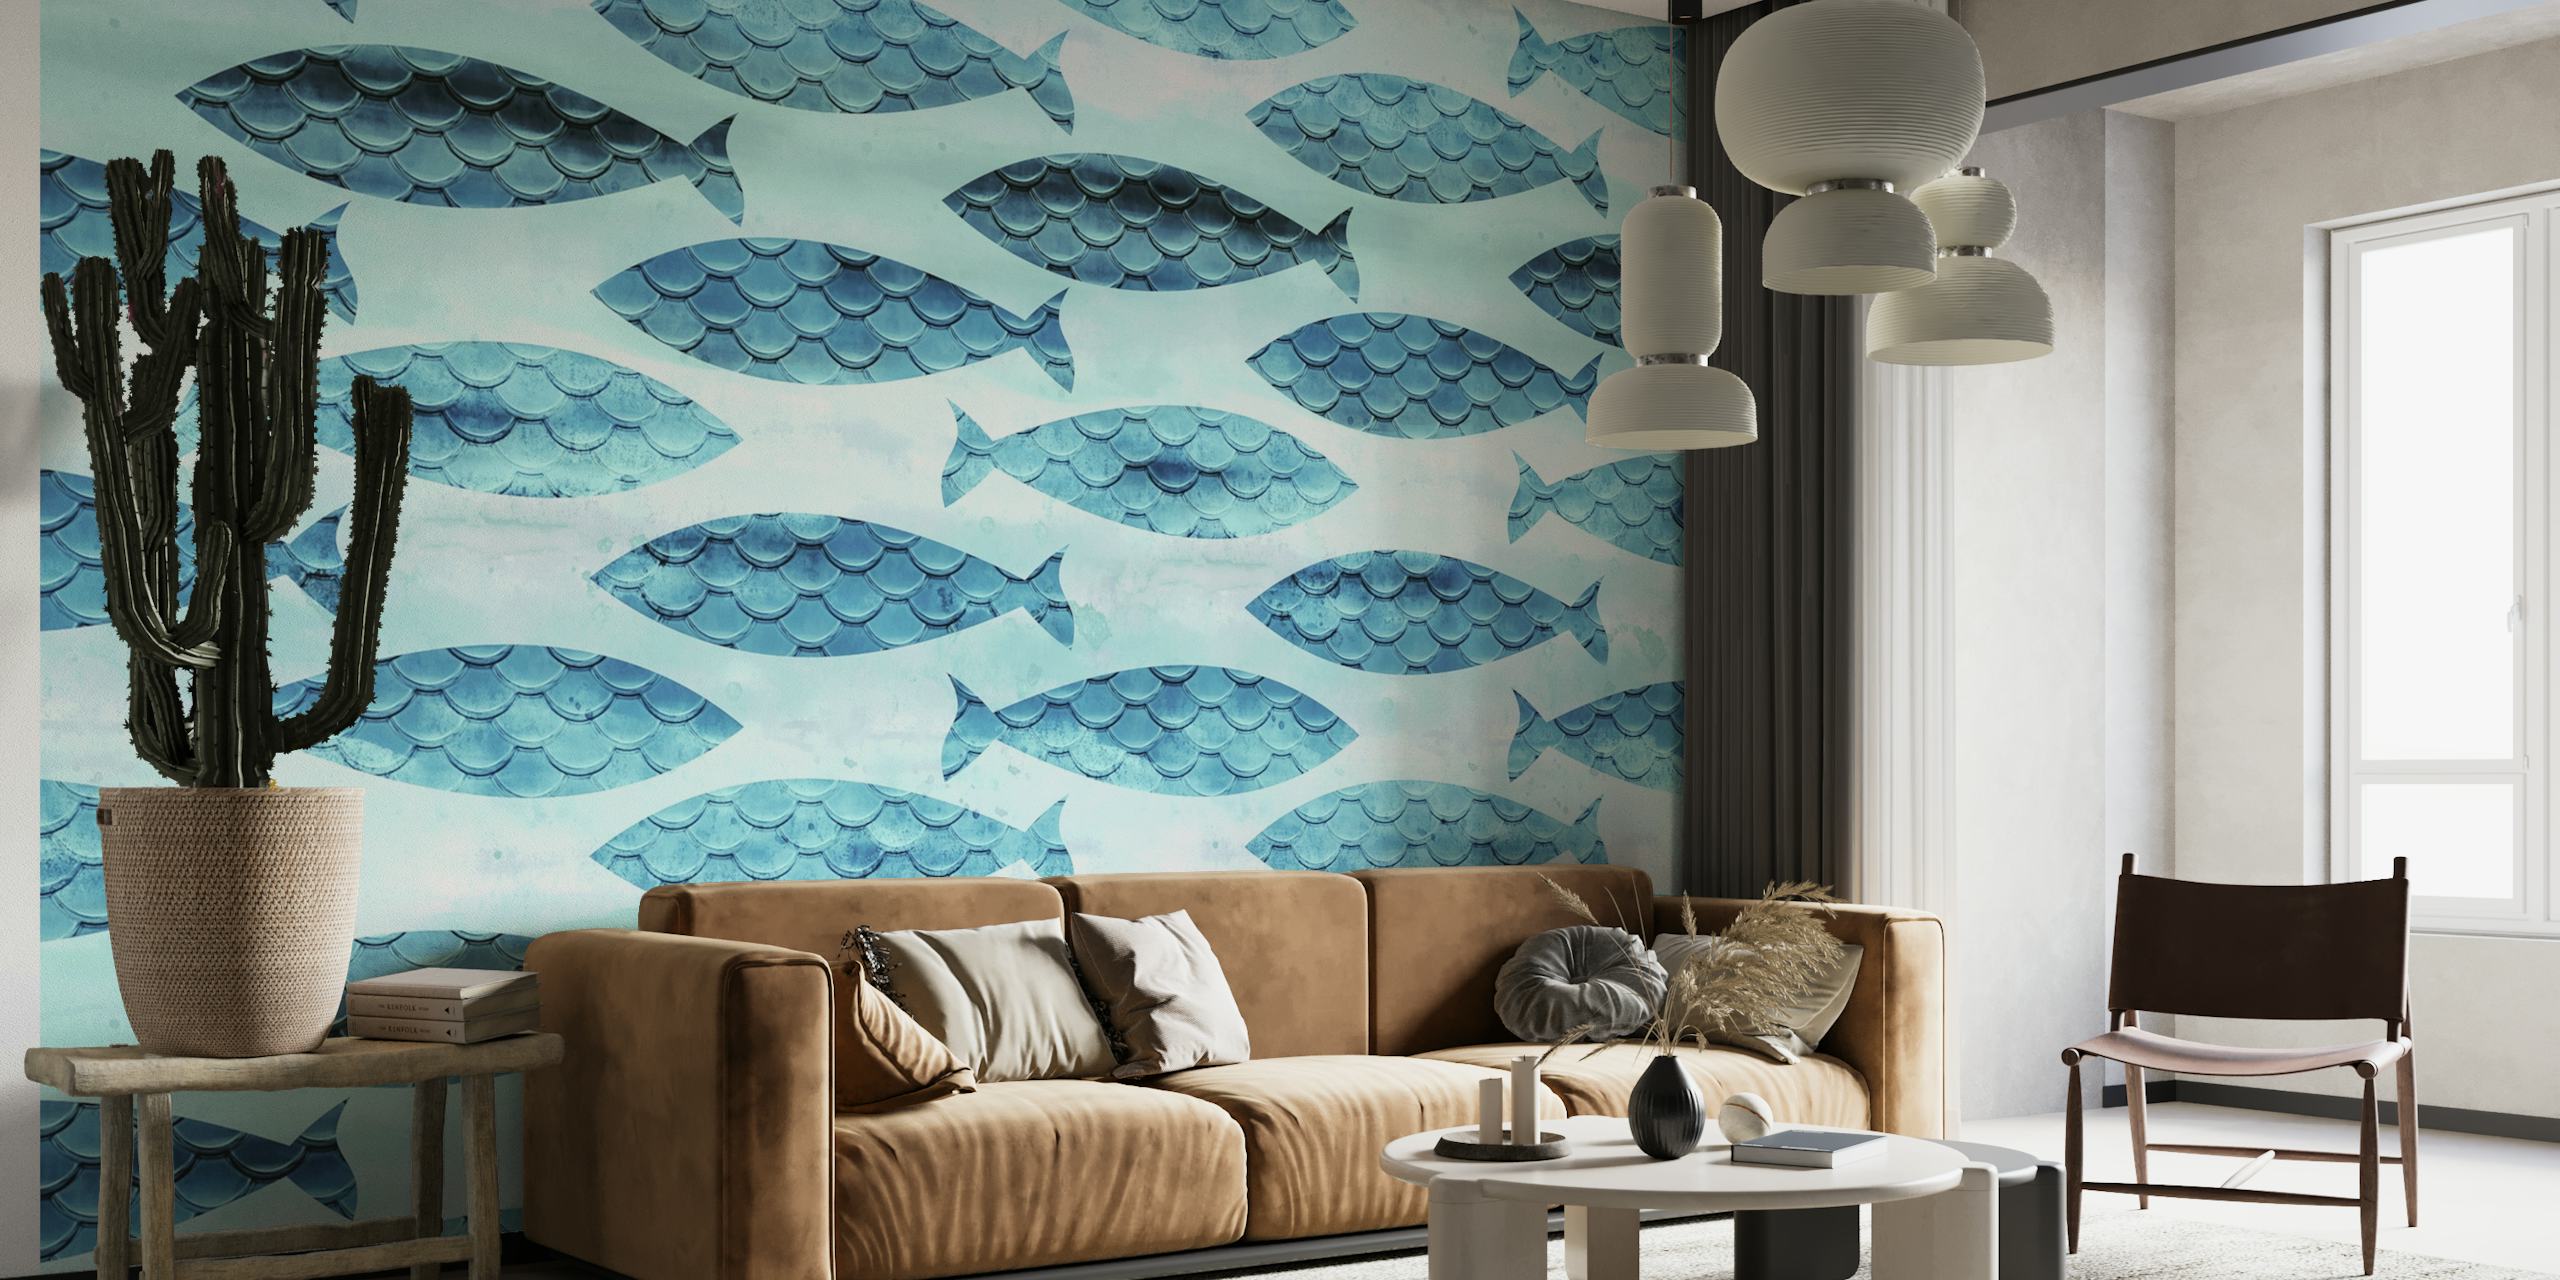 Muurschildering met turquoise en witte vispatronen voor interieurdecoratie